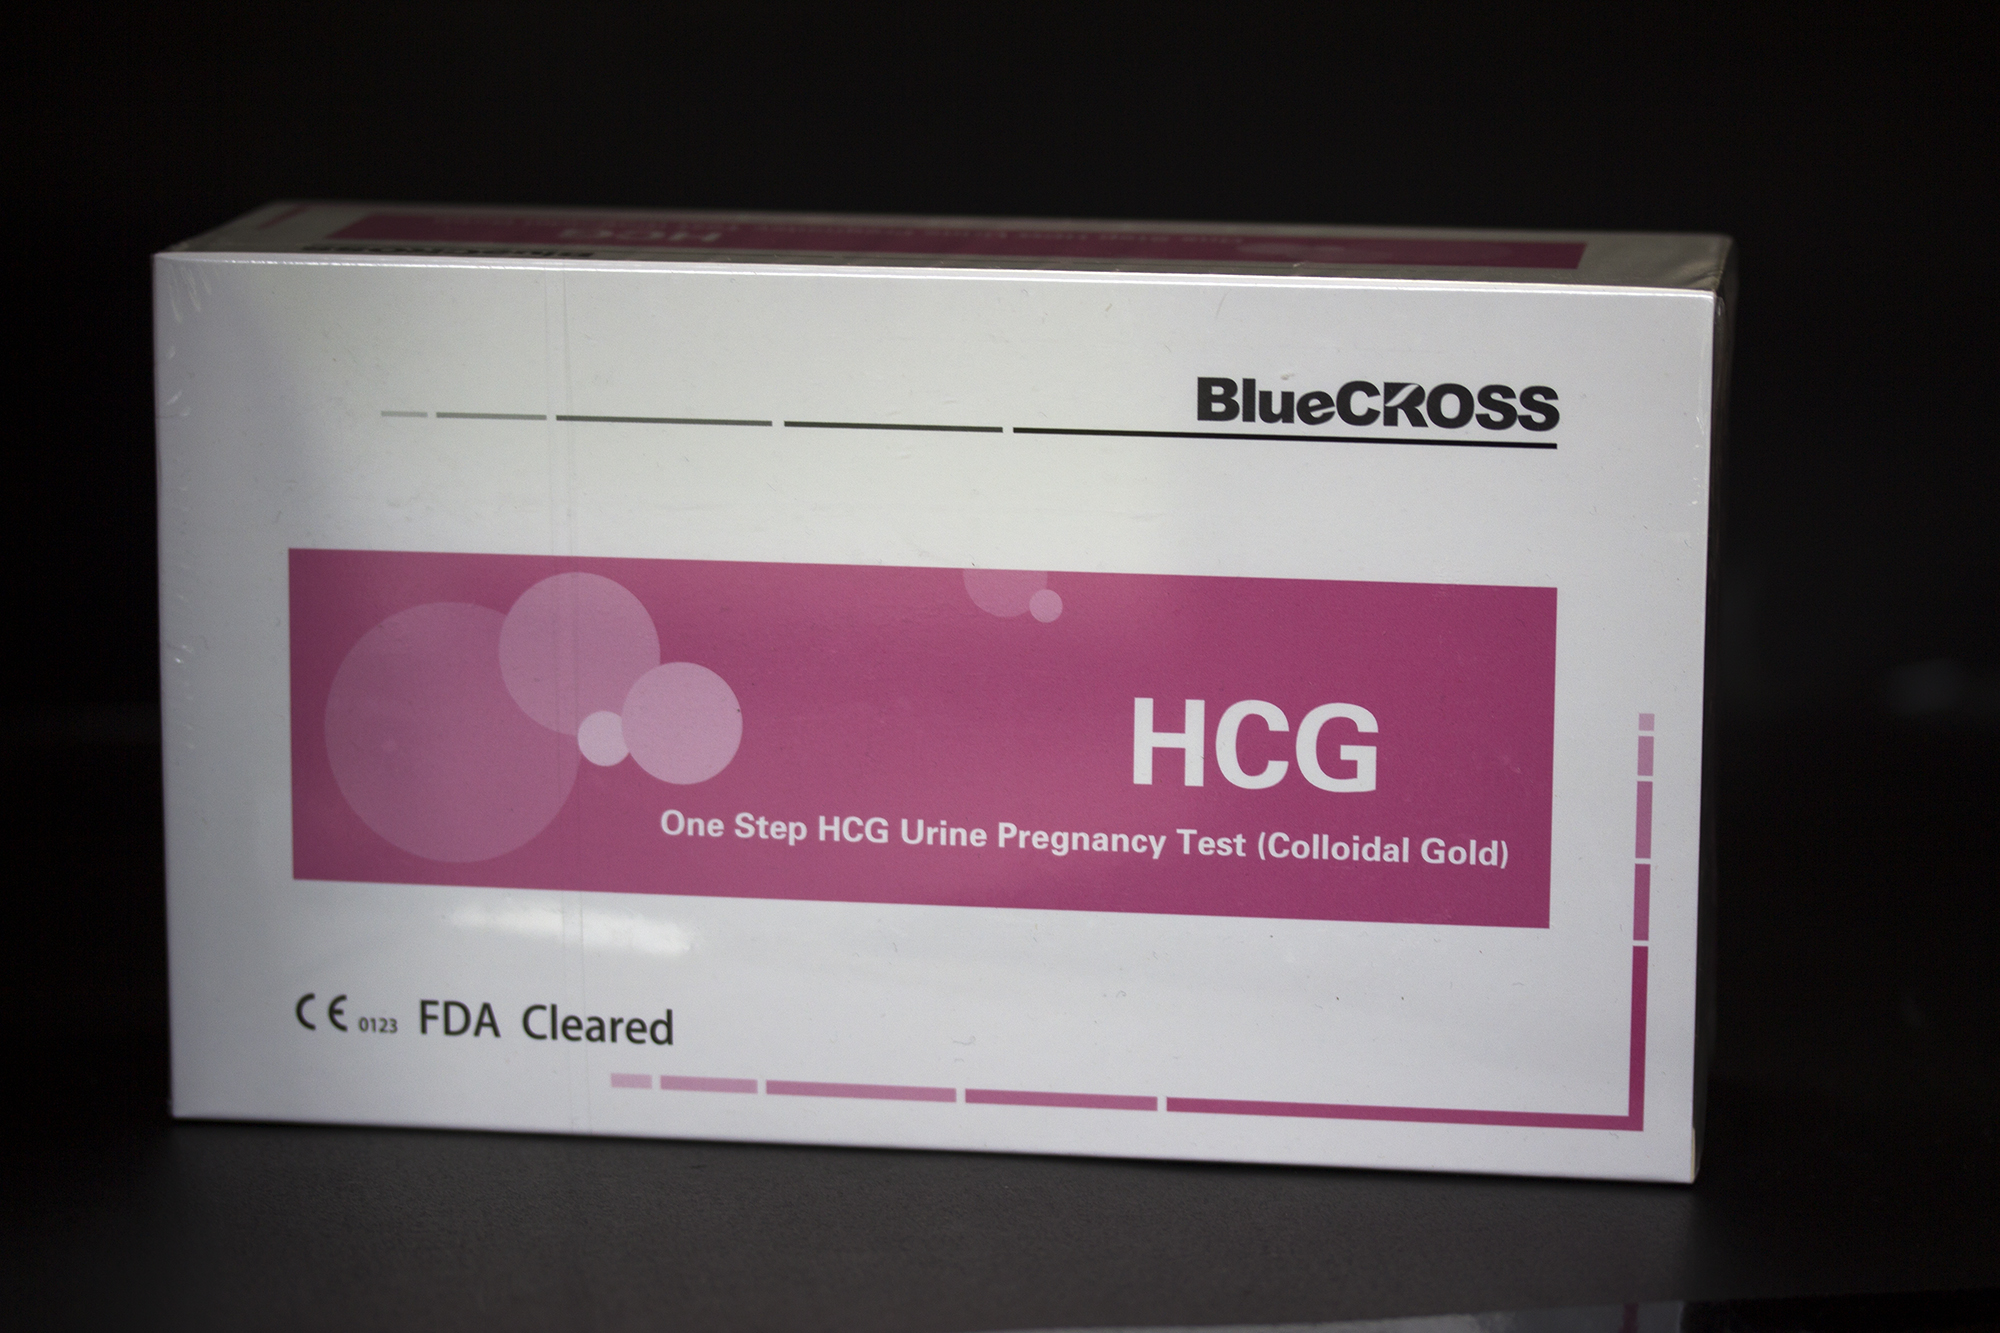 Blue Cross HCG Test Cassette